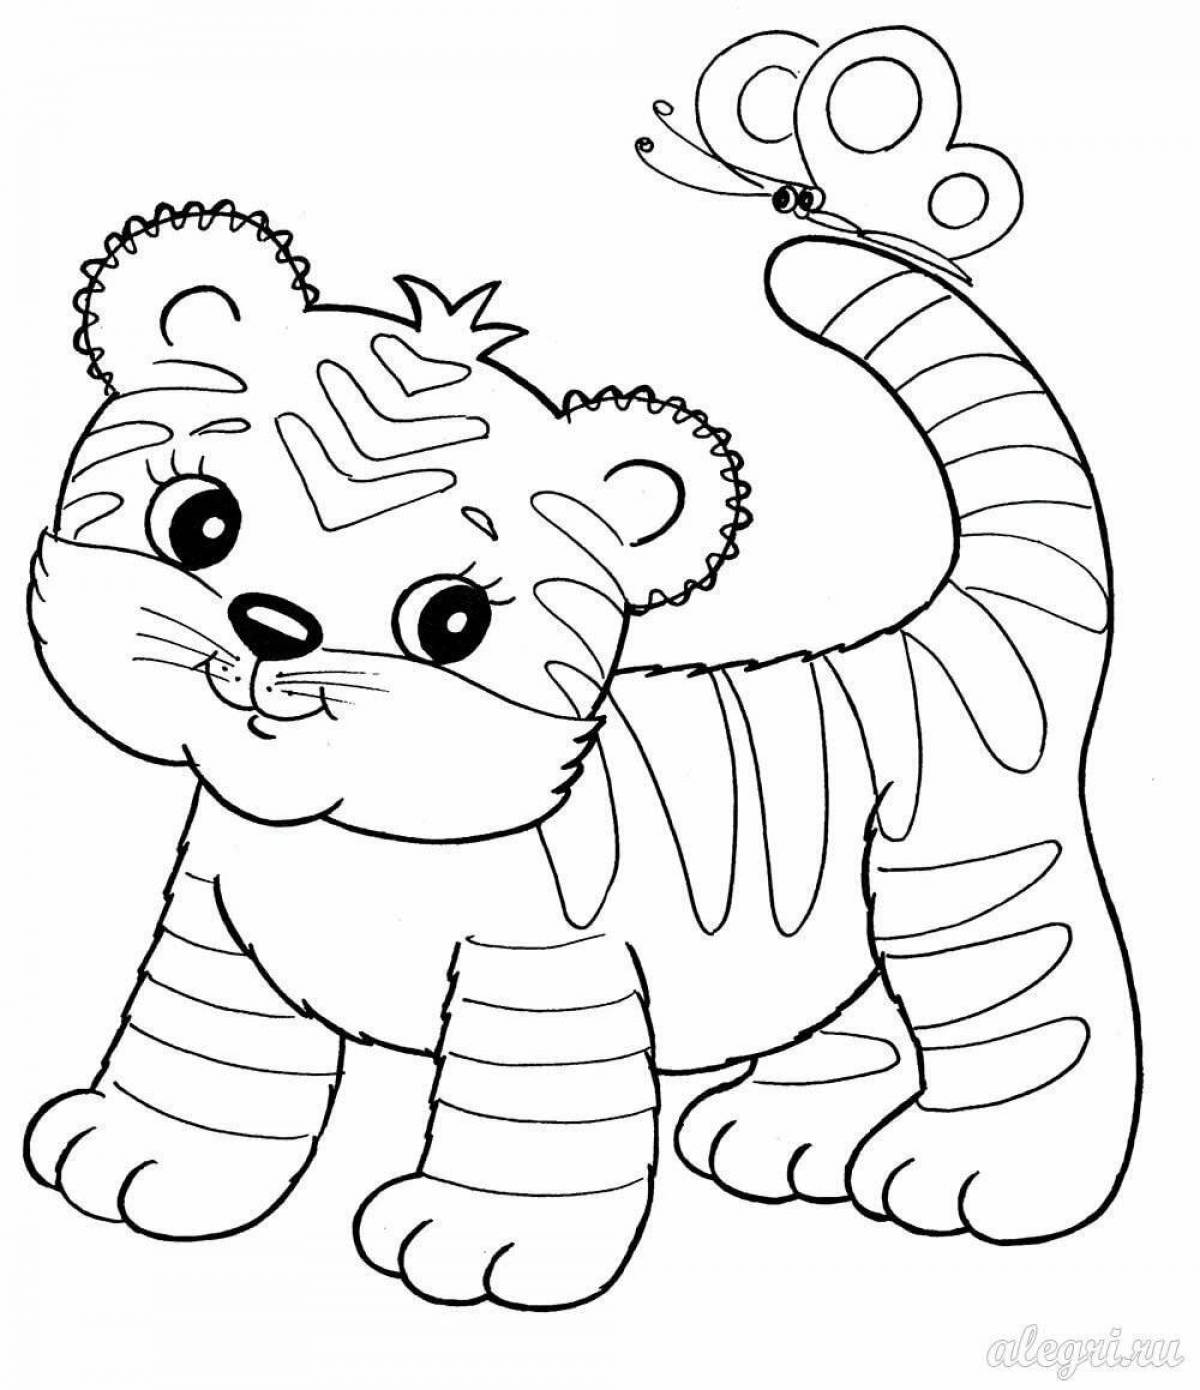 Coloring funny tiger cub